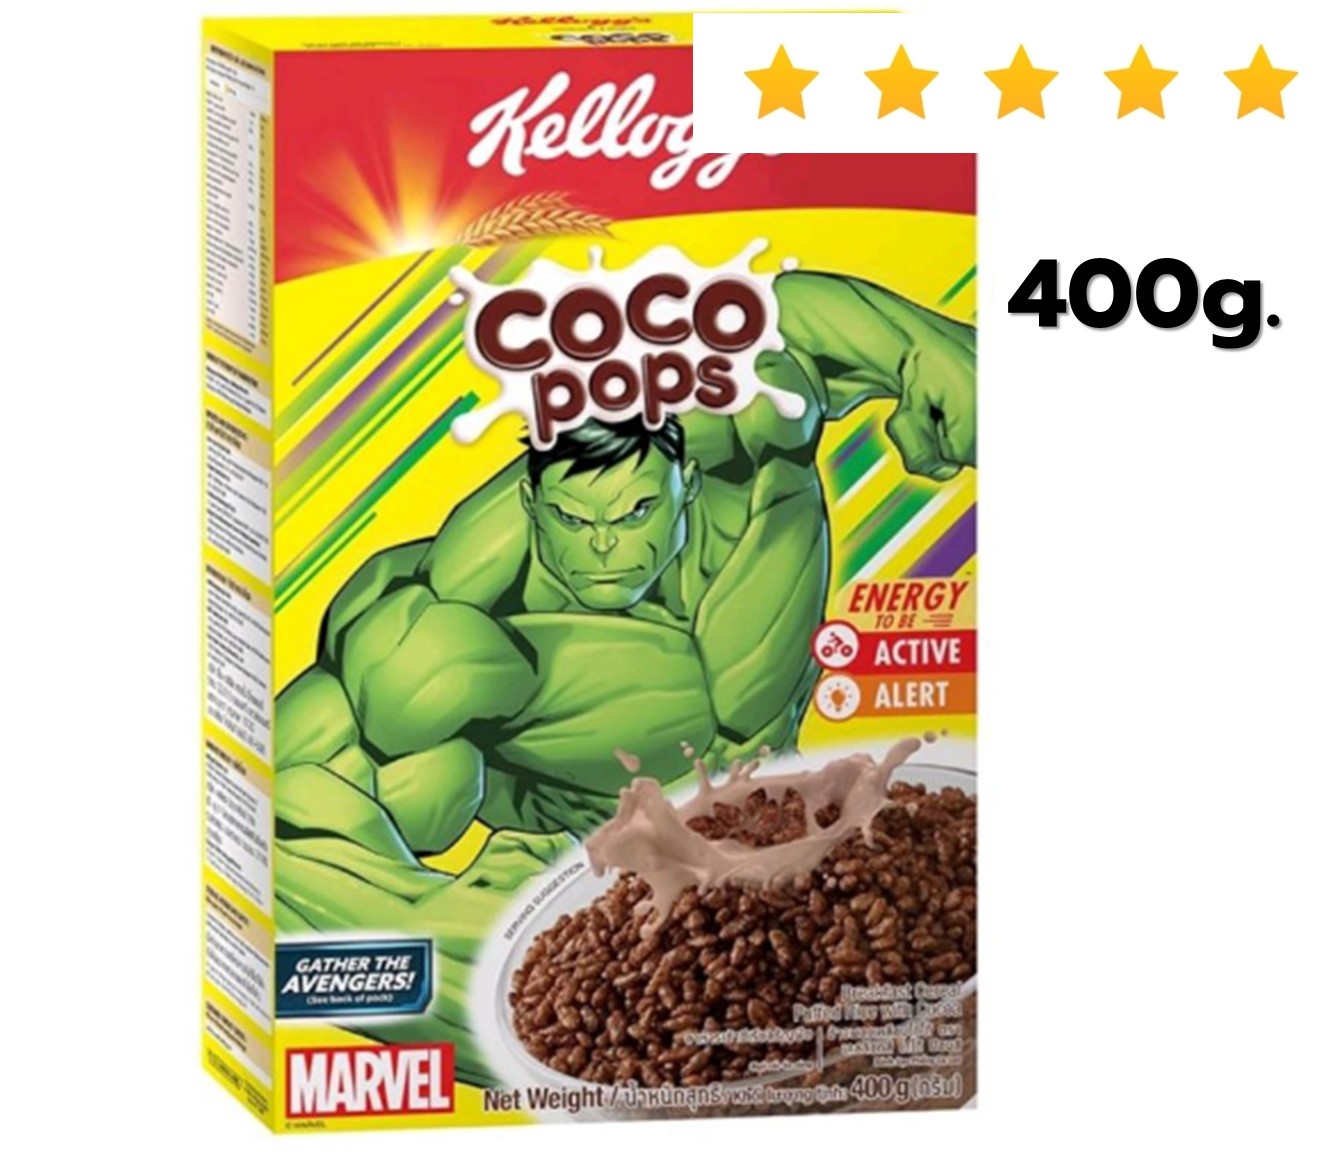 เคลล็อกส์ ซีเรียล โกโก้ ป๊อป KELLOGG'S MARVEL CEREAL COCO POPS 400G. อาหารเช้า ซีเรียล